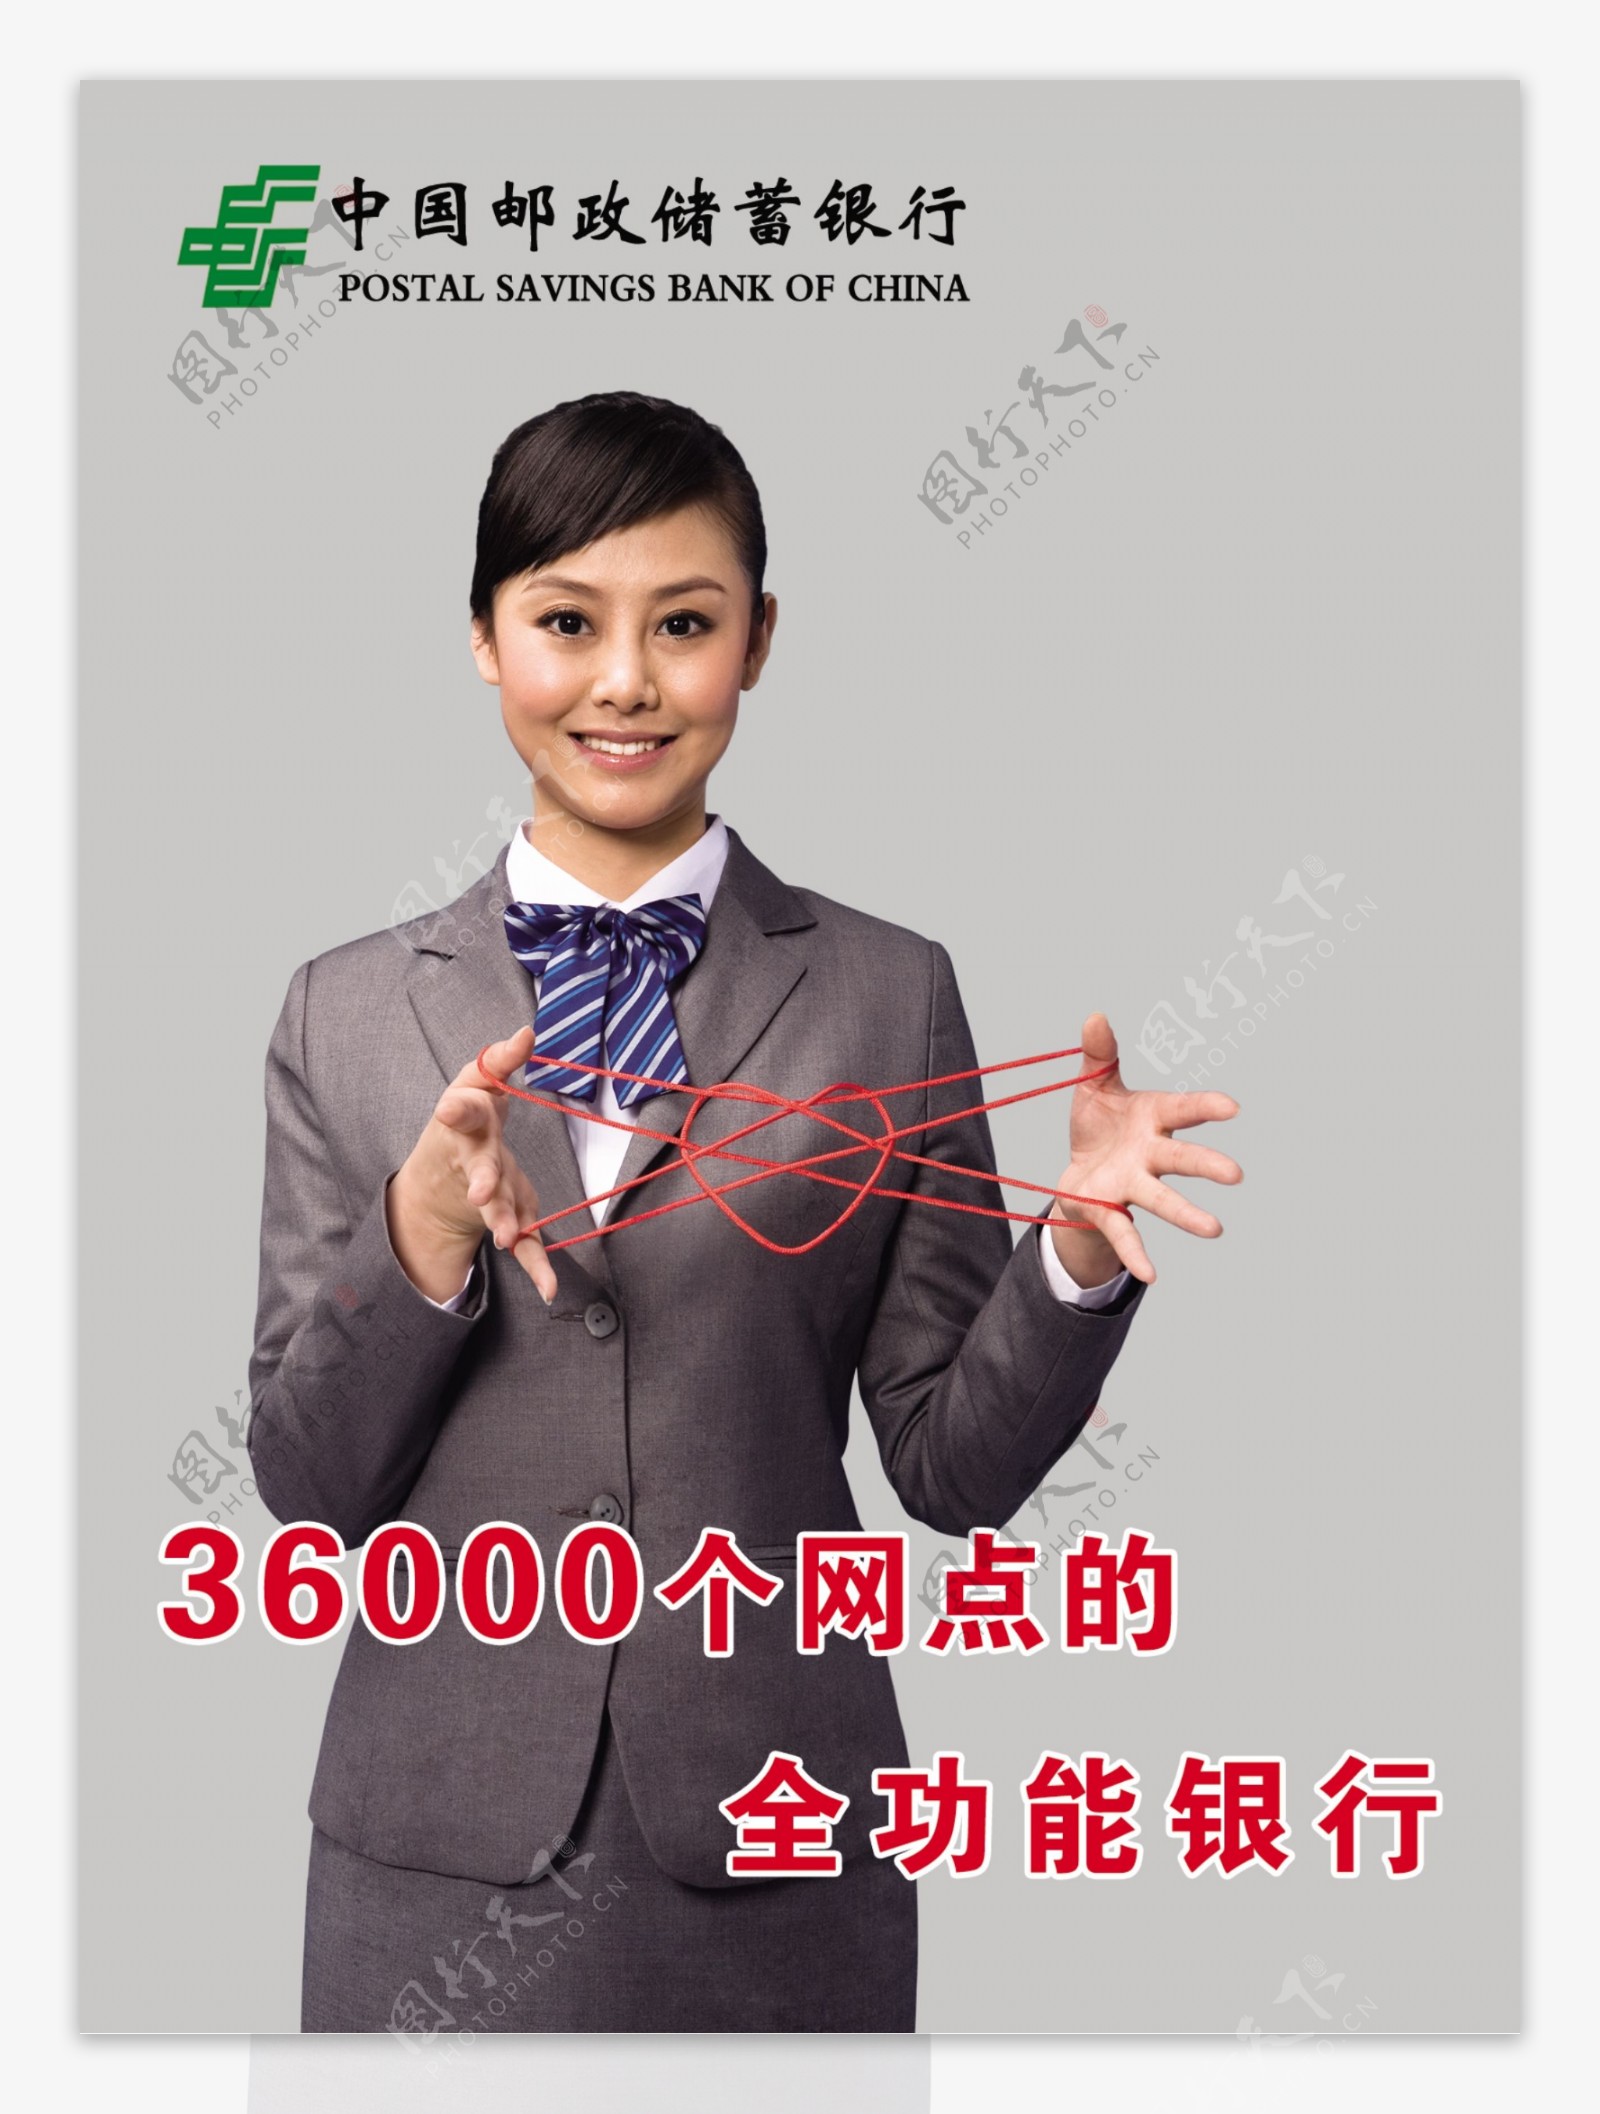 中国邮政储蓄银行企业品牌形象链接图图片